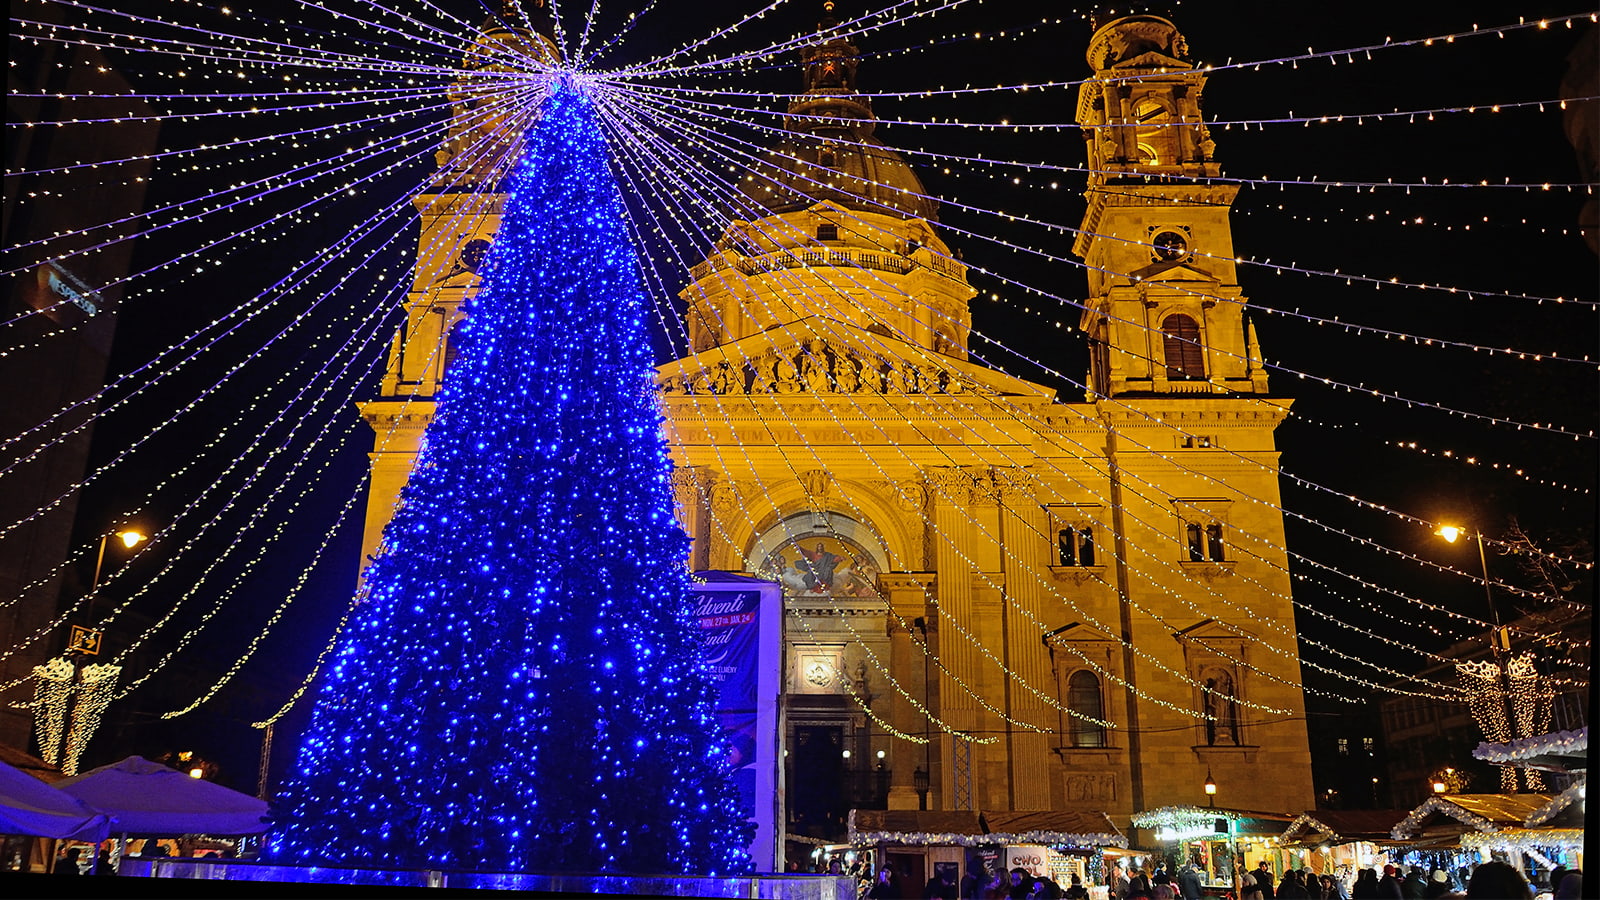 Mercado-de-Natal-em-frente-a-Basilica-Sao-Estevao-em-Budapeste 